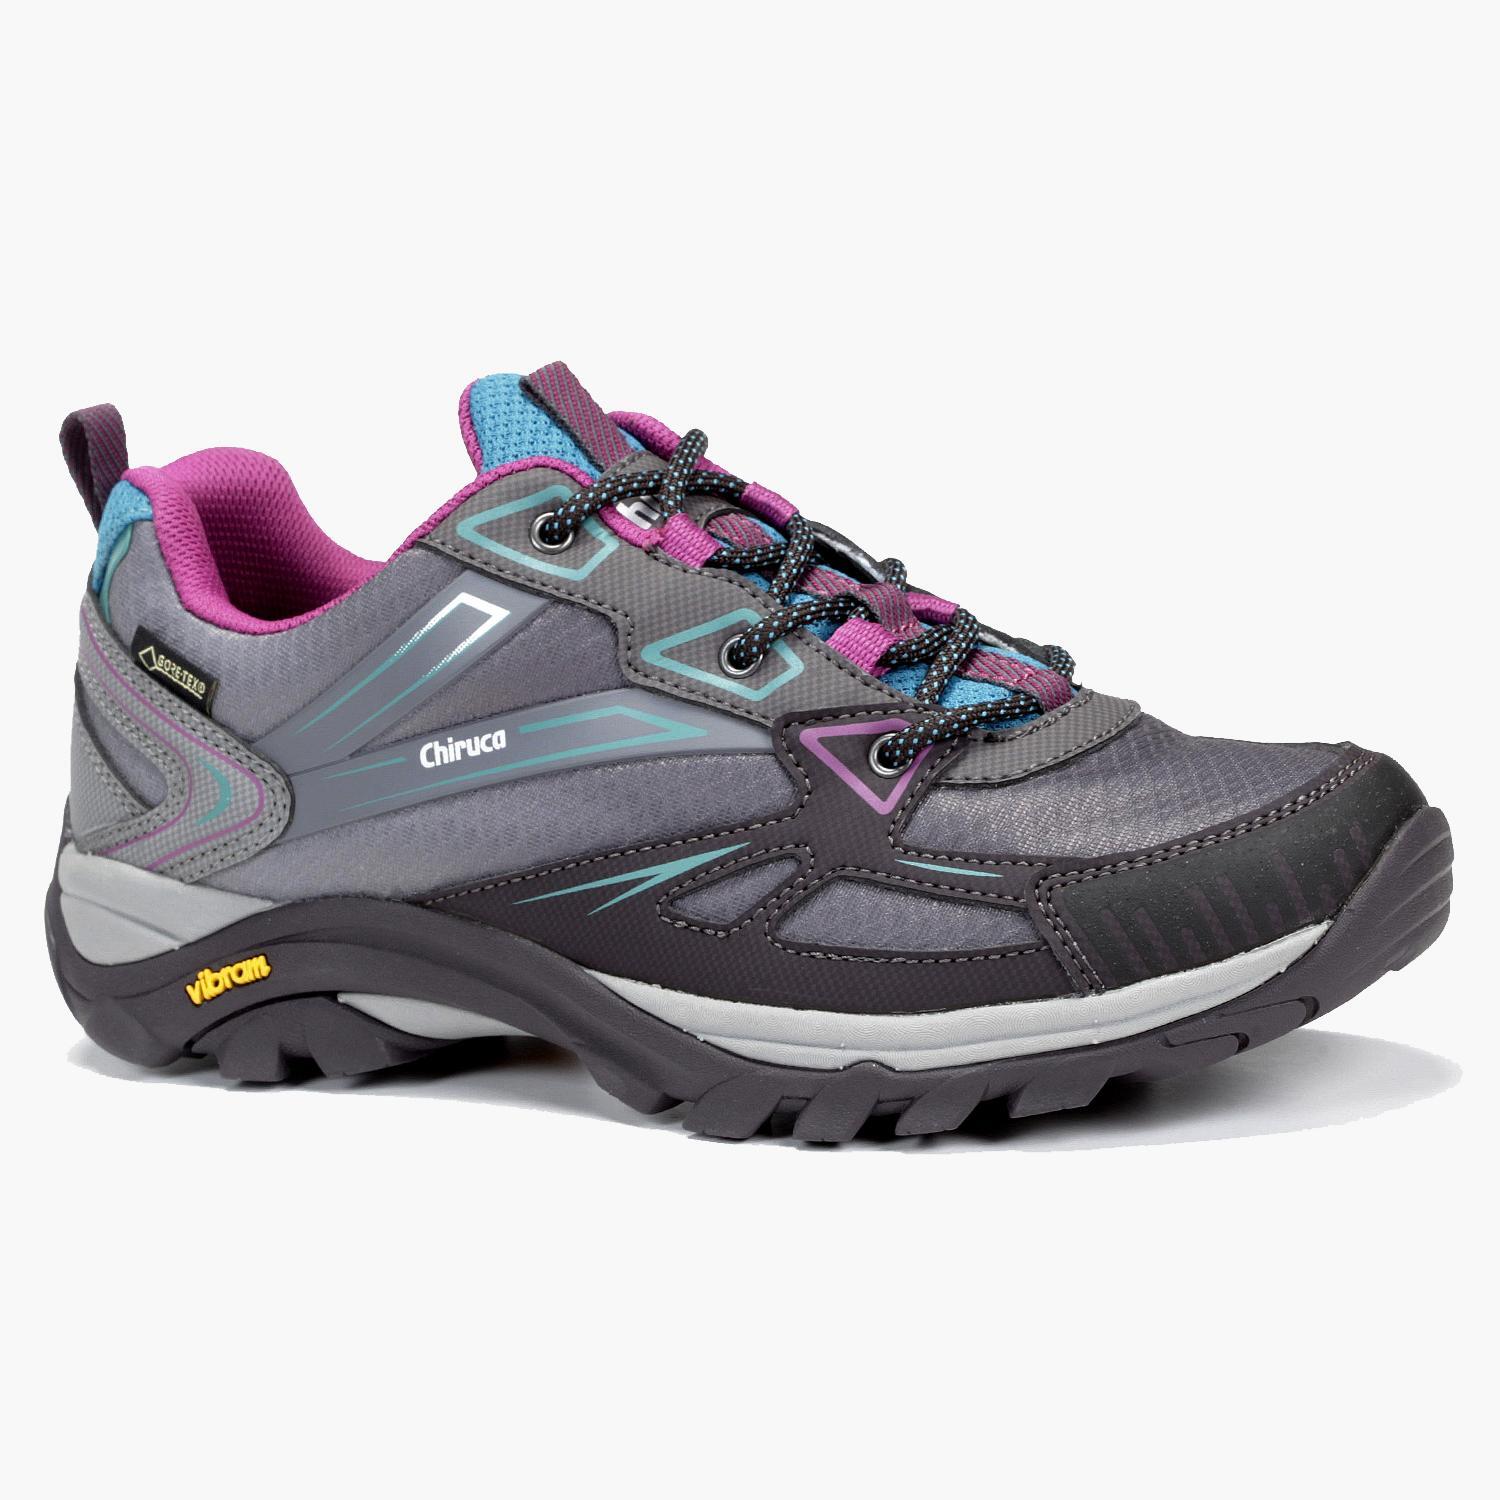 Chiruca Aruba - Gris - Chaussures de randonnée femme sports taille 37